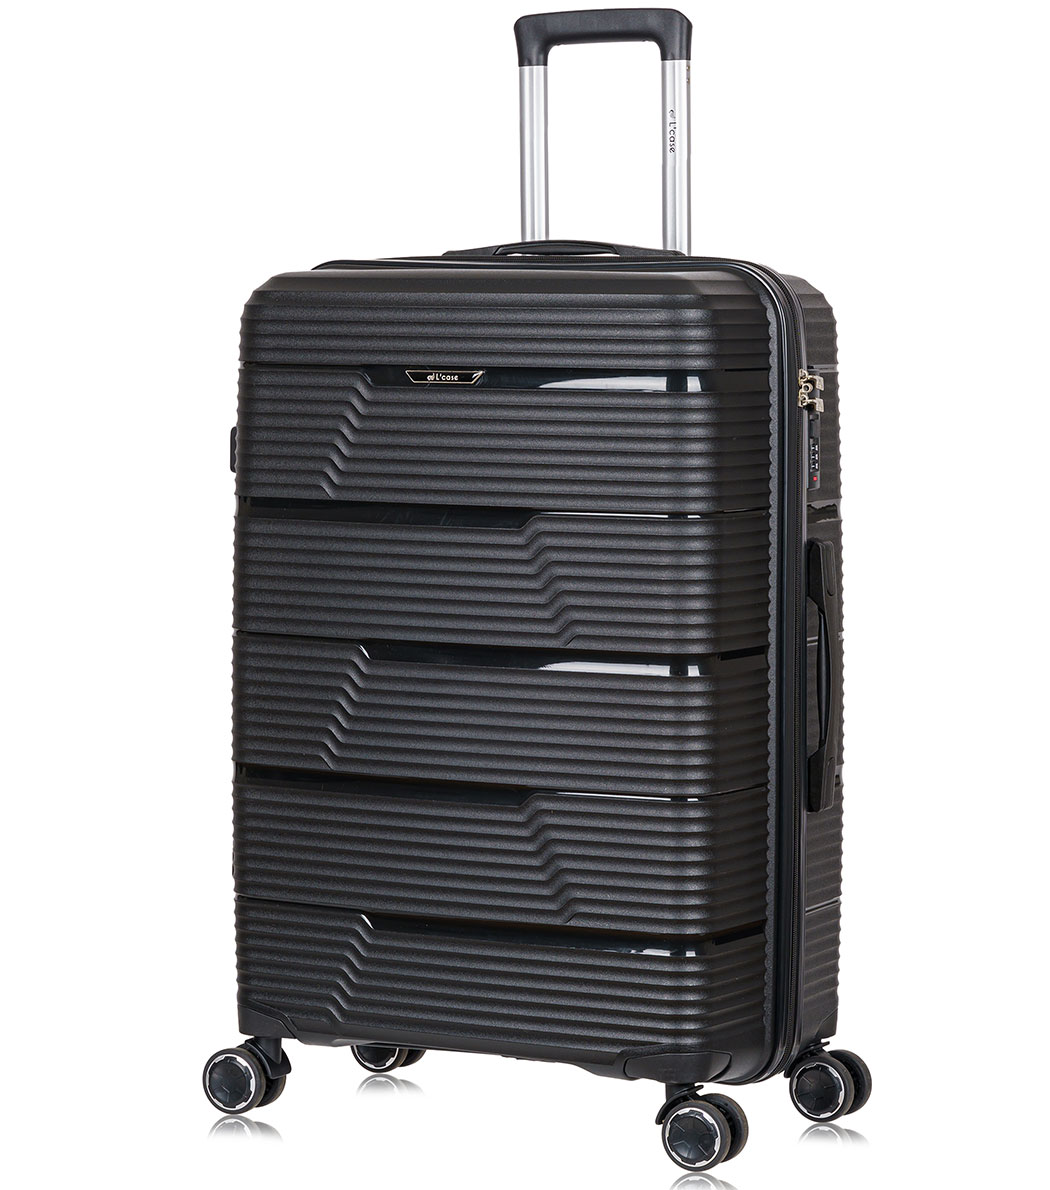 Большой чемодан L-case Manila Black L (71 см)